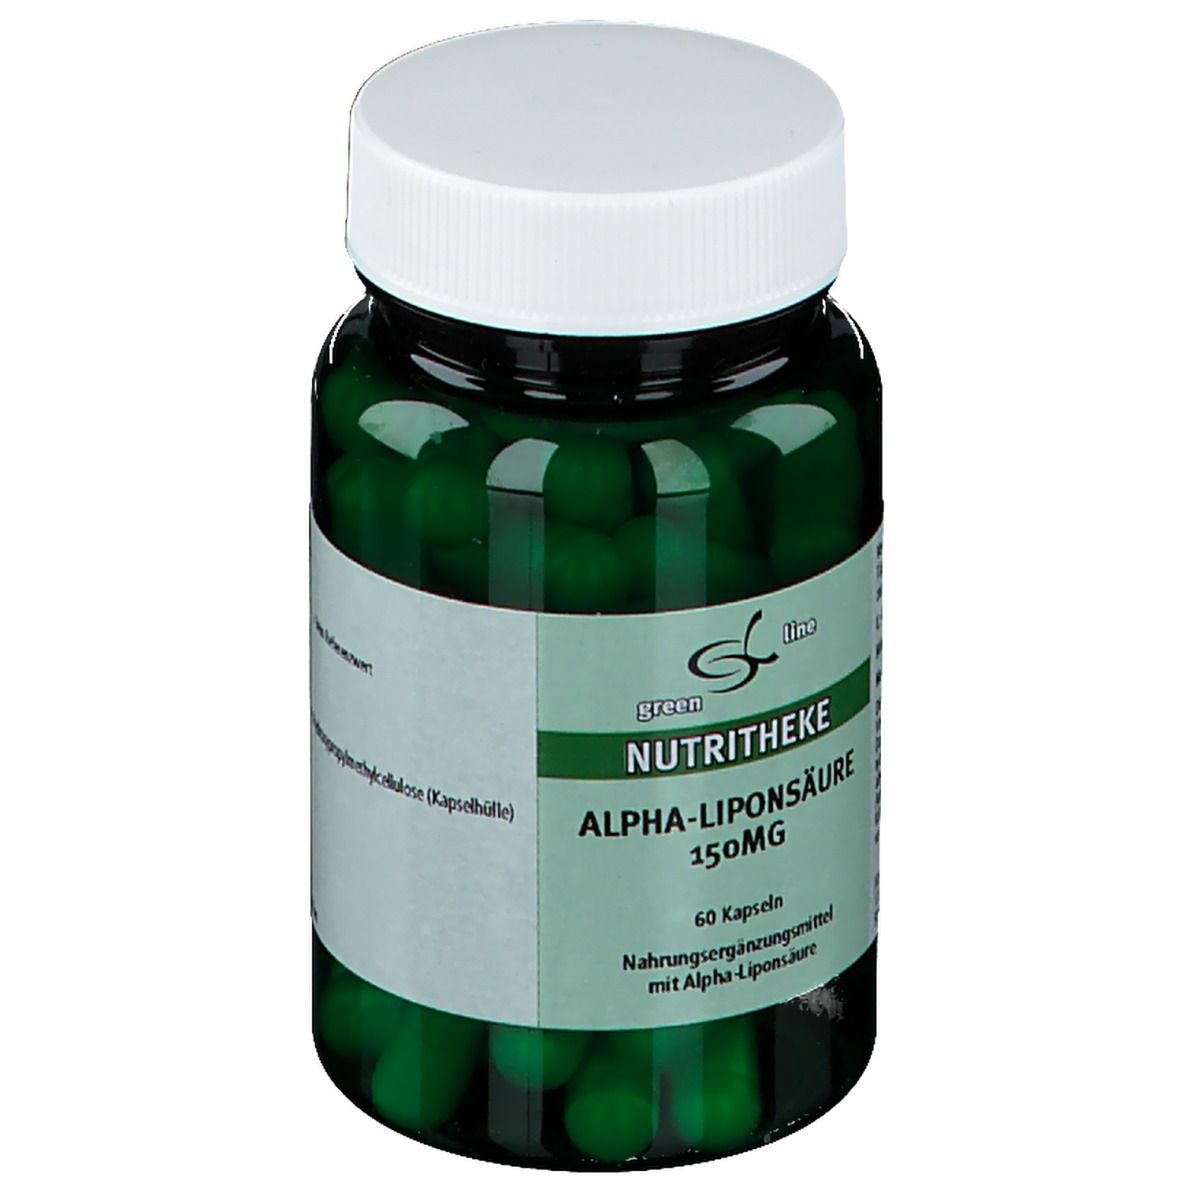 green line Alpha Liponsäure 150 mg